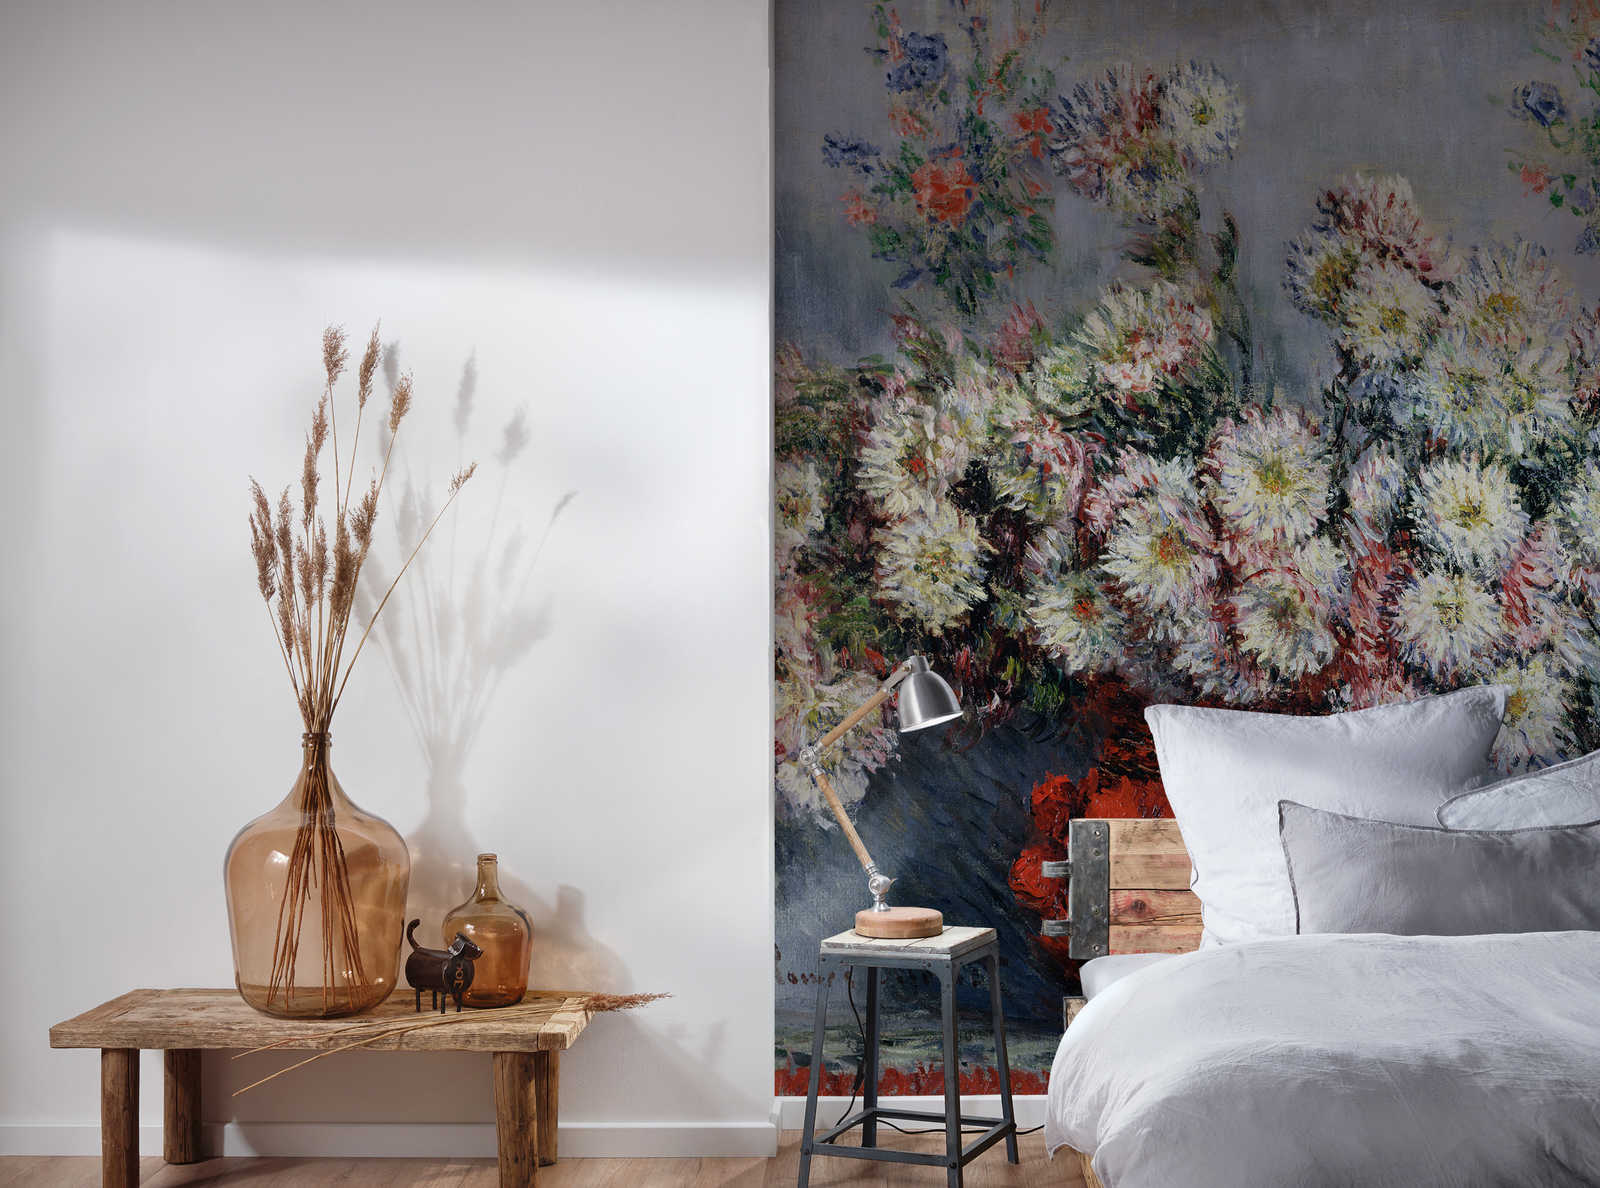             Fototapete "Chrysanthemen" von Claude Monet
        